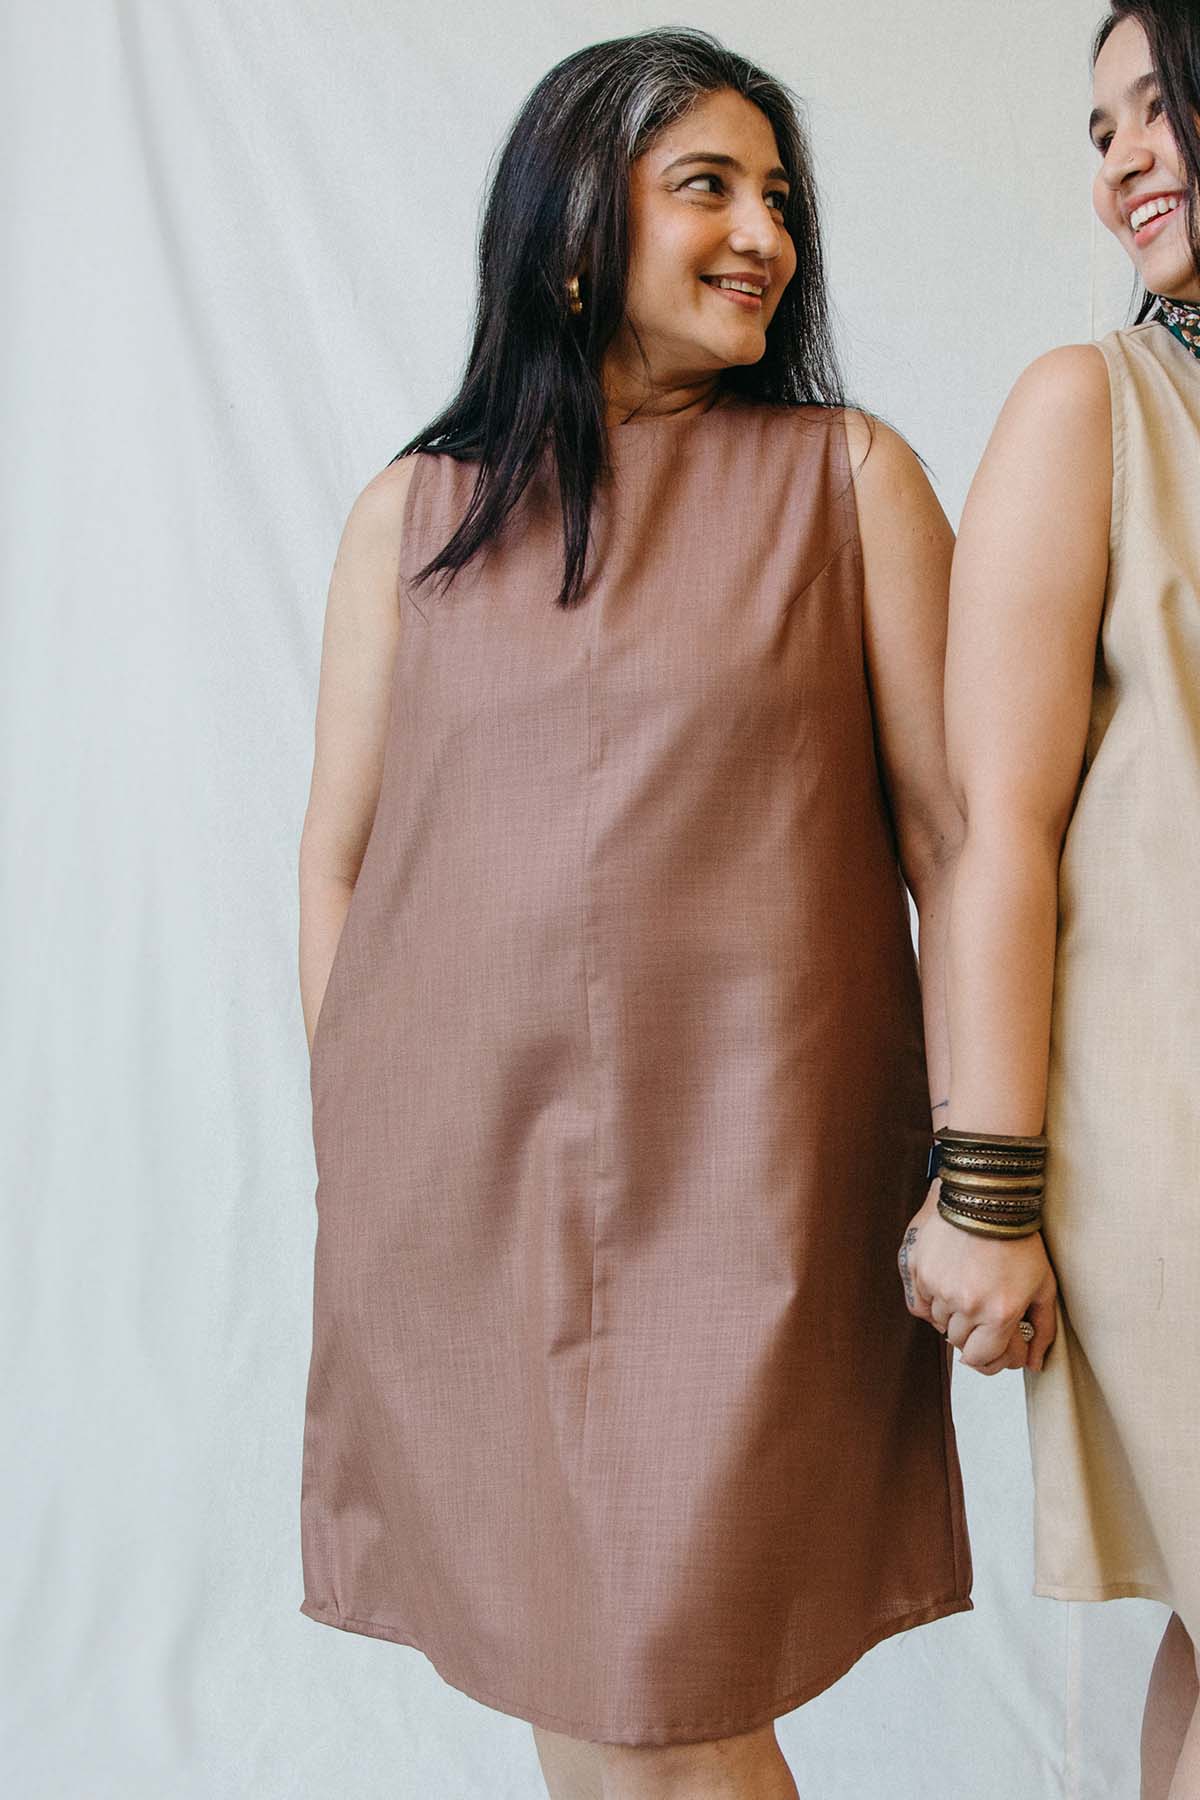 Chhaya Gandhi Brown Cotton Sleeveless Dress for women online at ScrollnShops